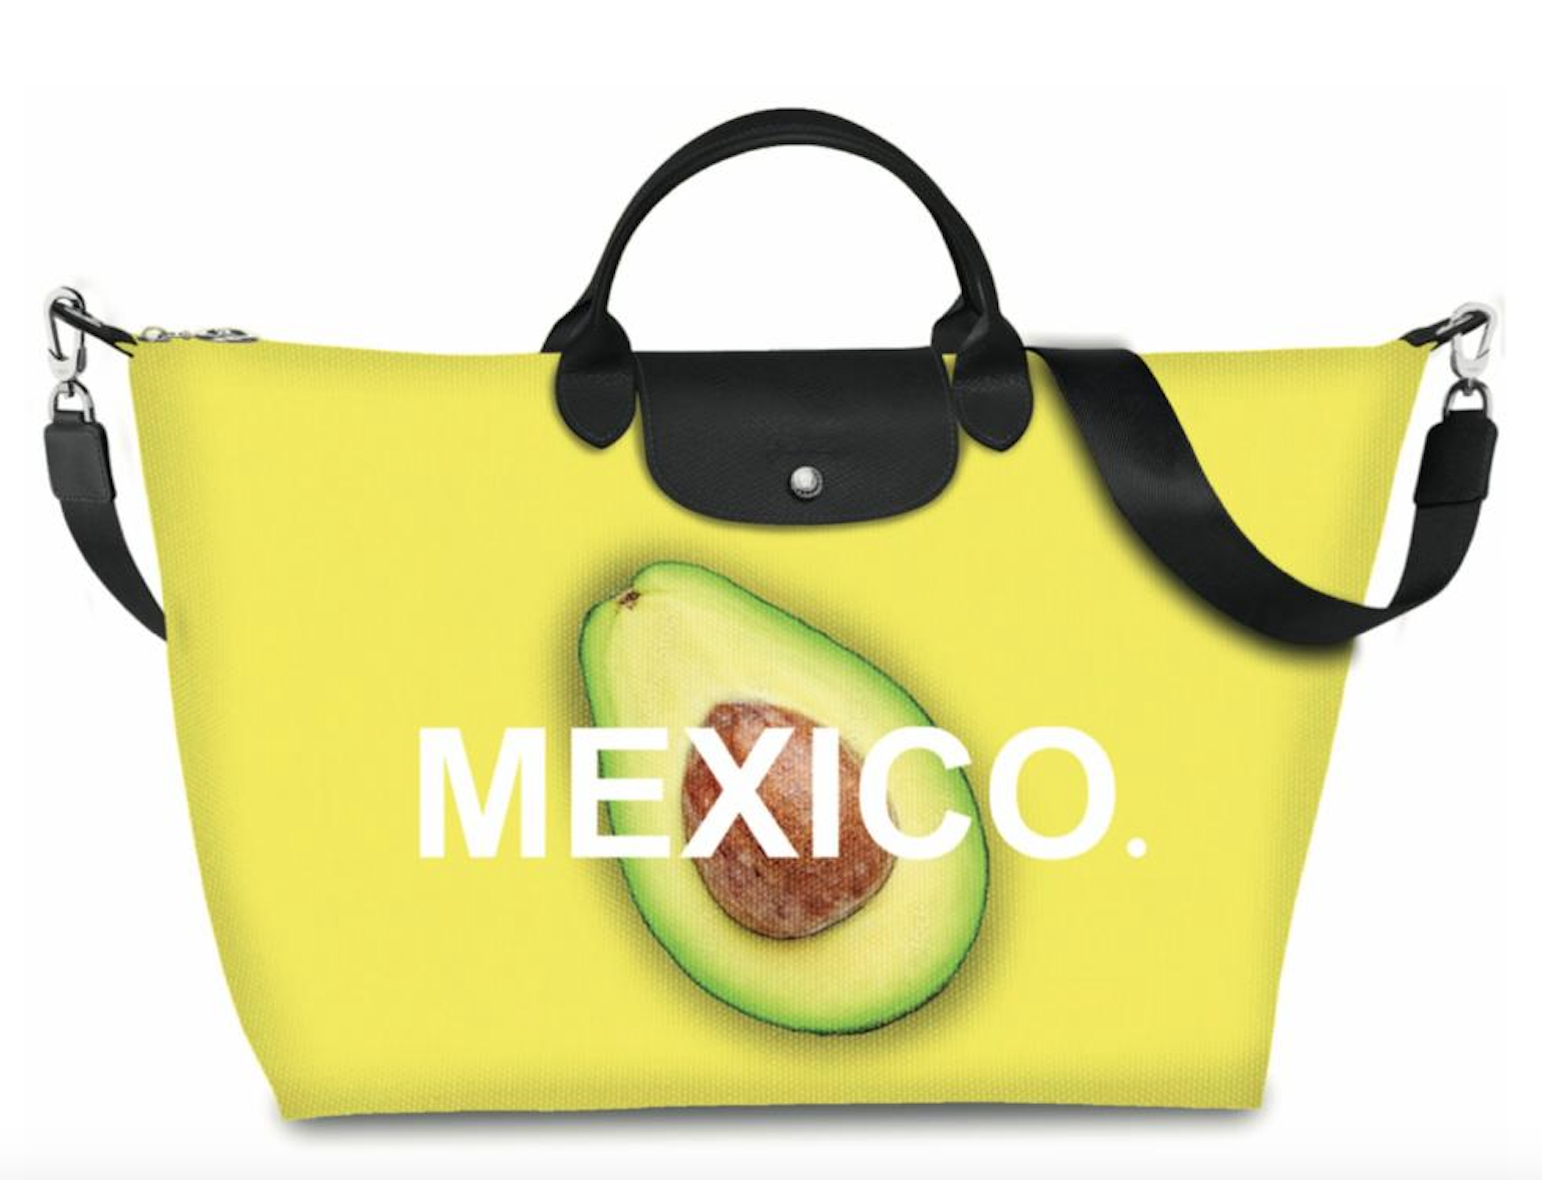 Longchamp se inspira en México con una bolsa de edición limitada